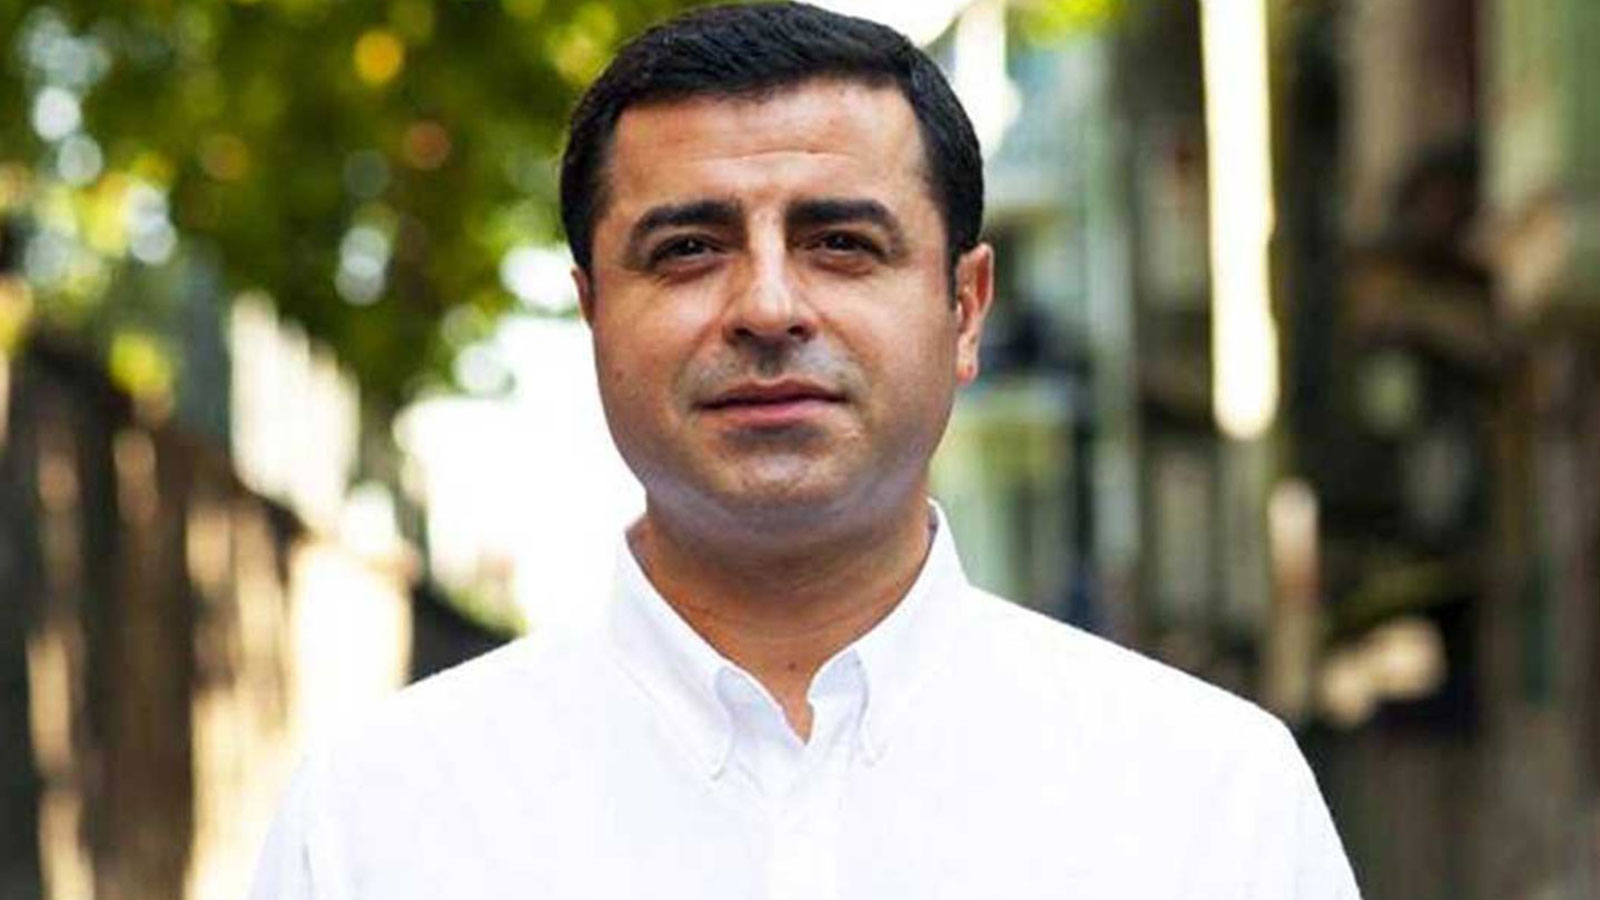 Եվրադատարանը Թուրքիային հարկադրել է փոխհատուցում վճարել ընդդիմադիր գործիչ Դեմիրթաշին